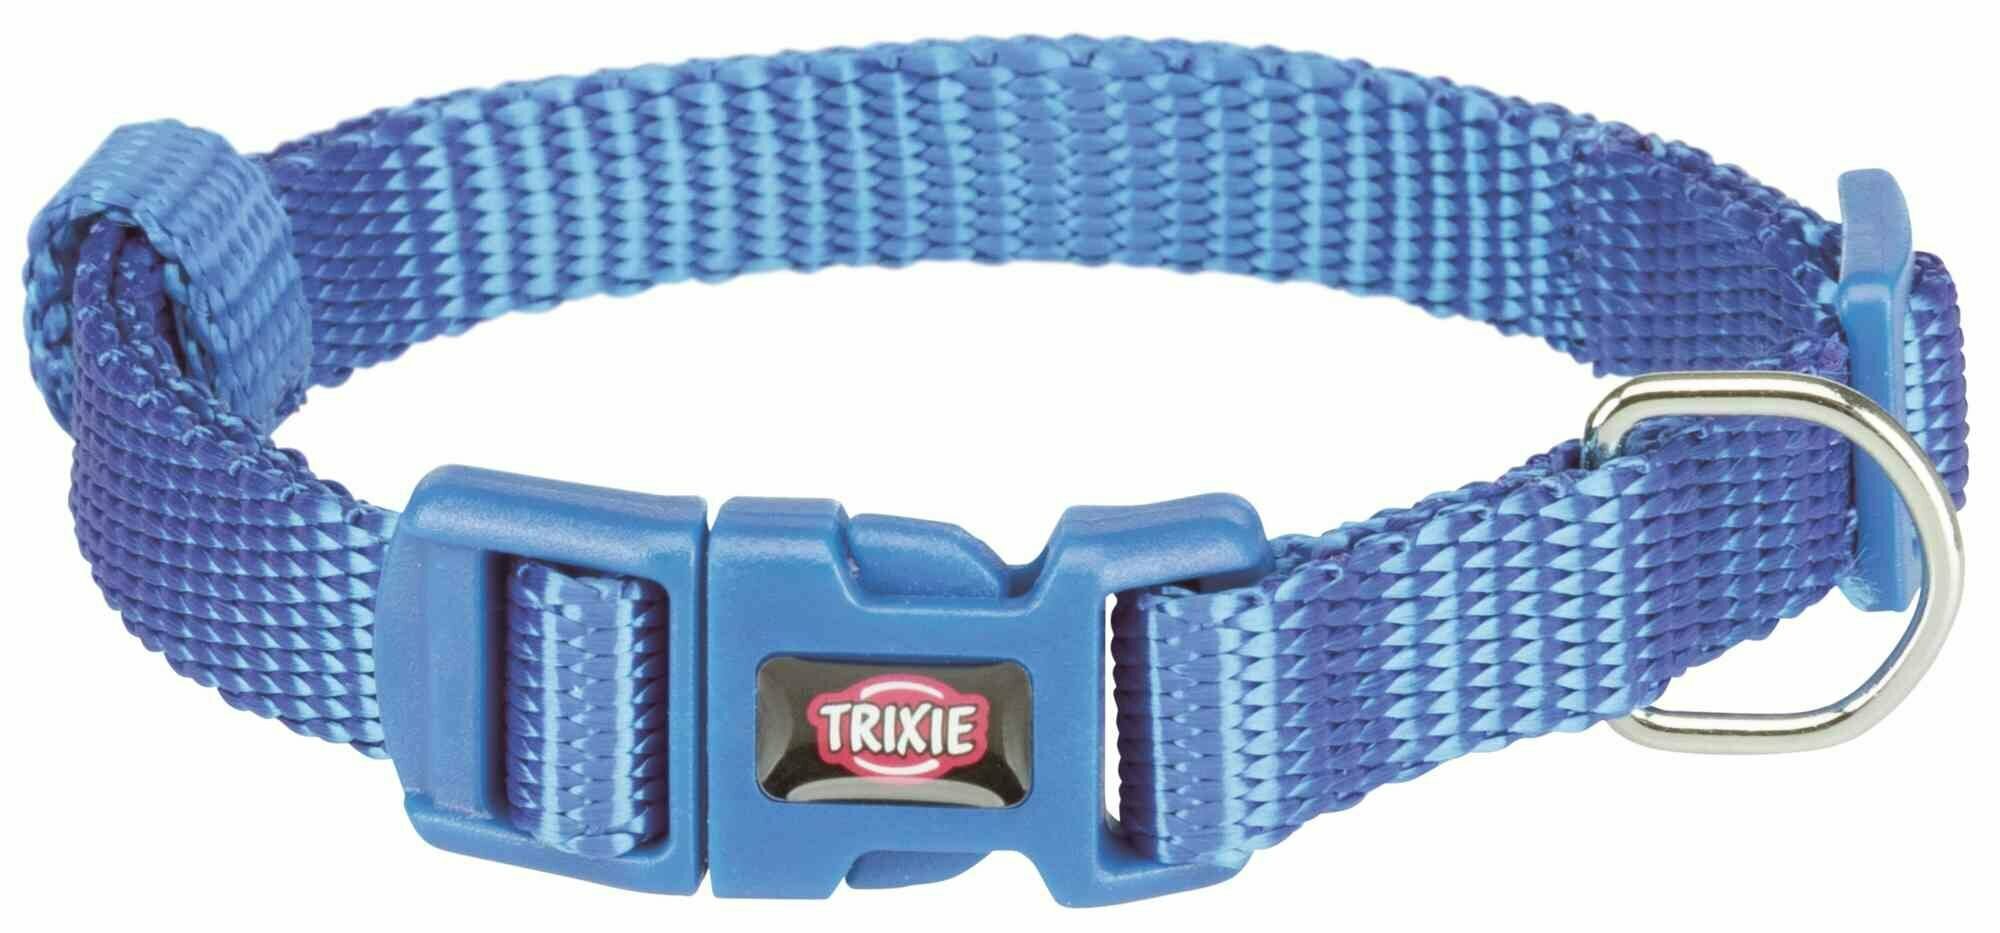 Для ежедневного использования ошейник TRIXIE Premium S-M, обхват шеи 30-45 см, 1 шт, синий/черный, M